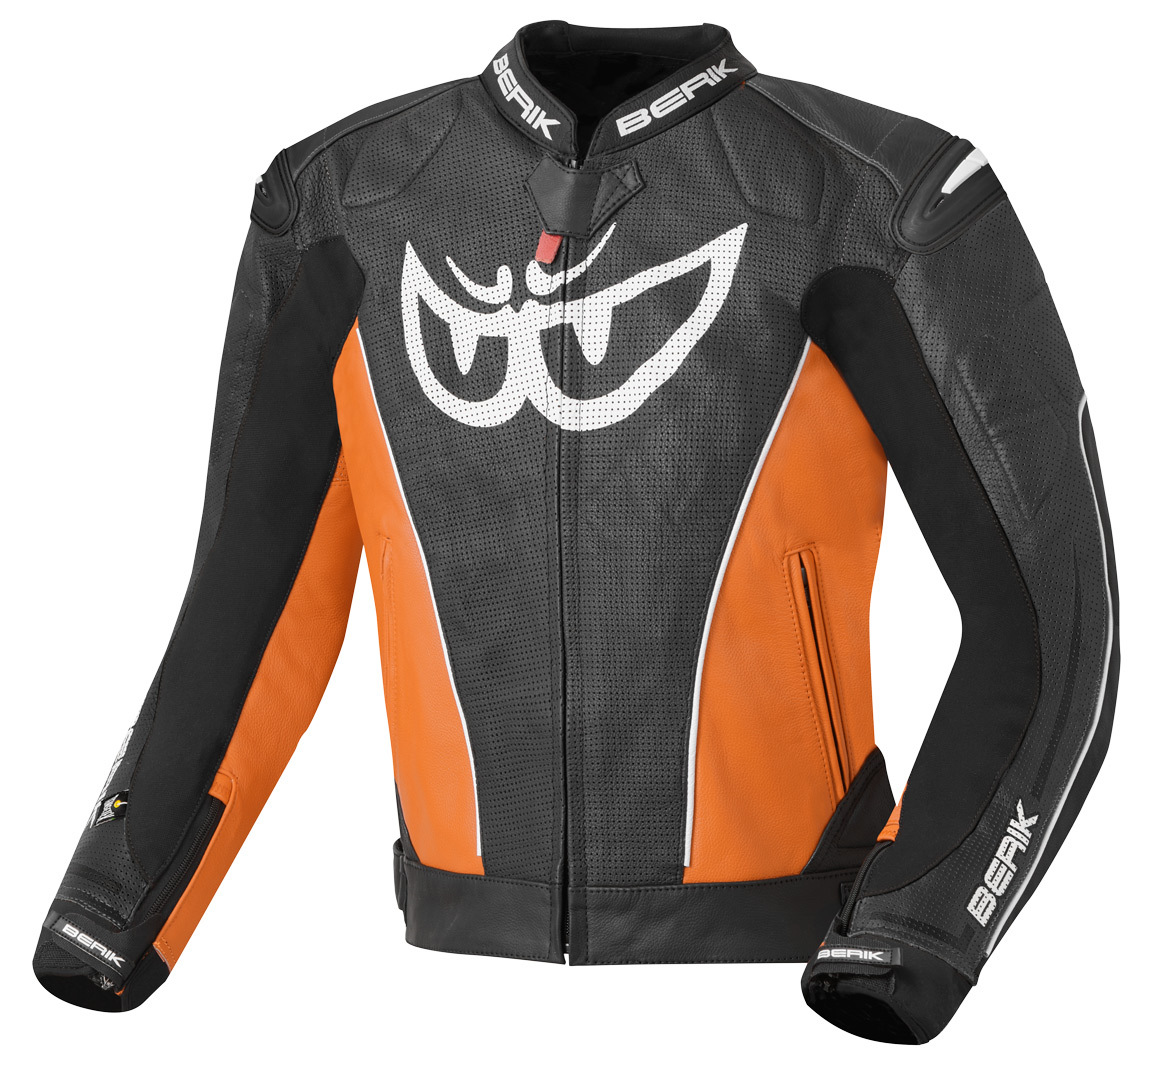 Мотоциклетная кожаная куртка Berik Street с регулируемой талией и манжетами, черный/оранжевый куртка размер 44 оранжевый черный